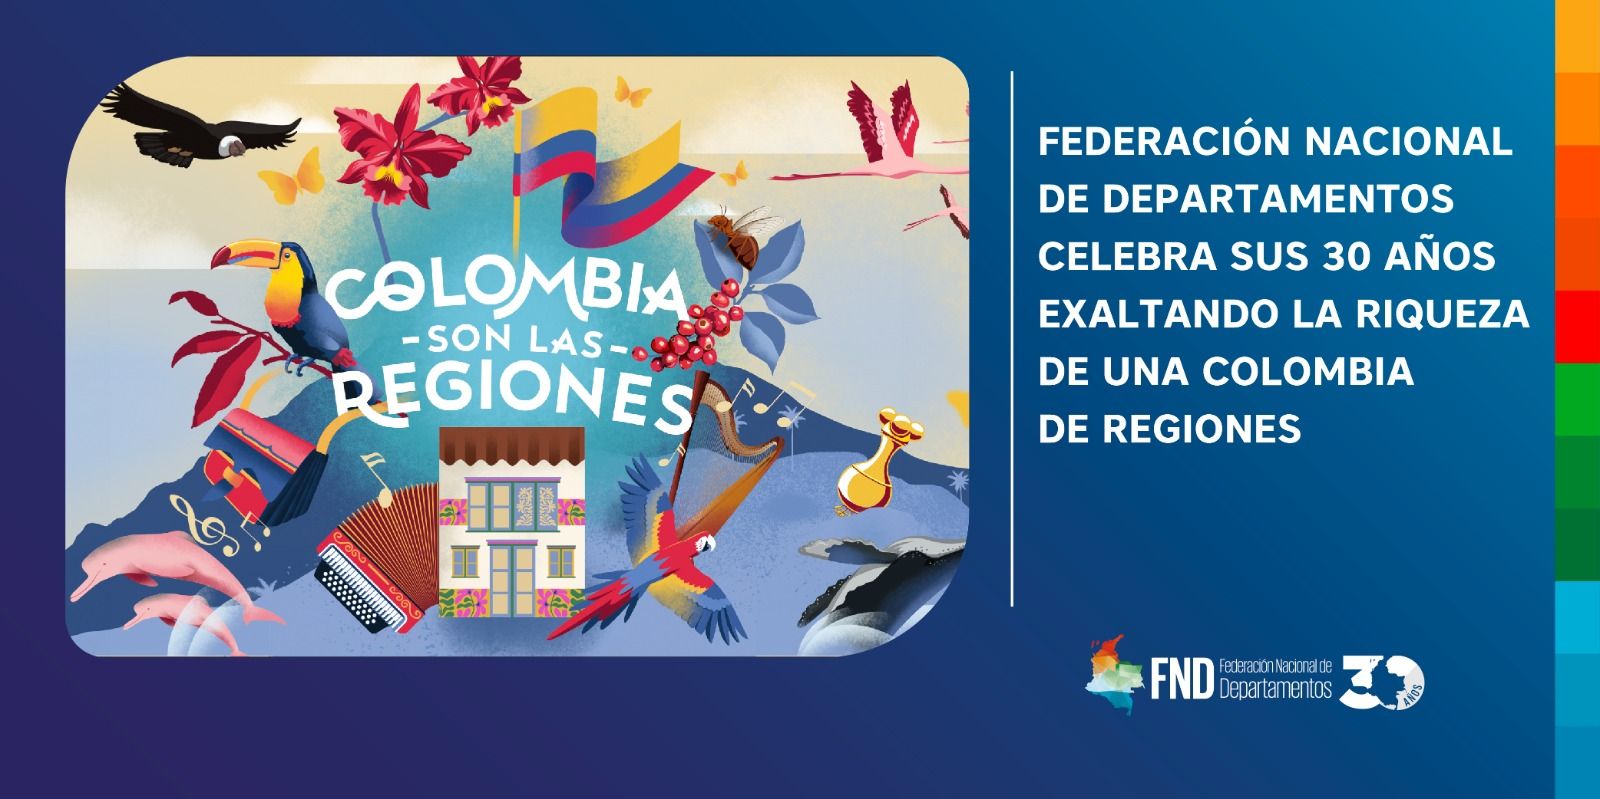 FEDERACIÓN NACIONAL DE DEPARTAMENTOS (FND) CELEBRA SUS 30 AÑOS EXALTANDO LA RIQUEZA DE UNA COLOMBIA DE REGIONES